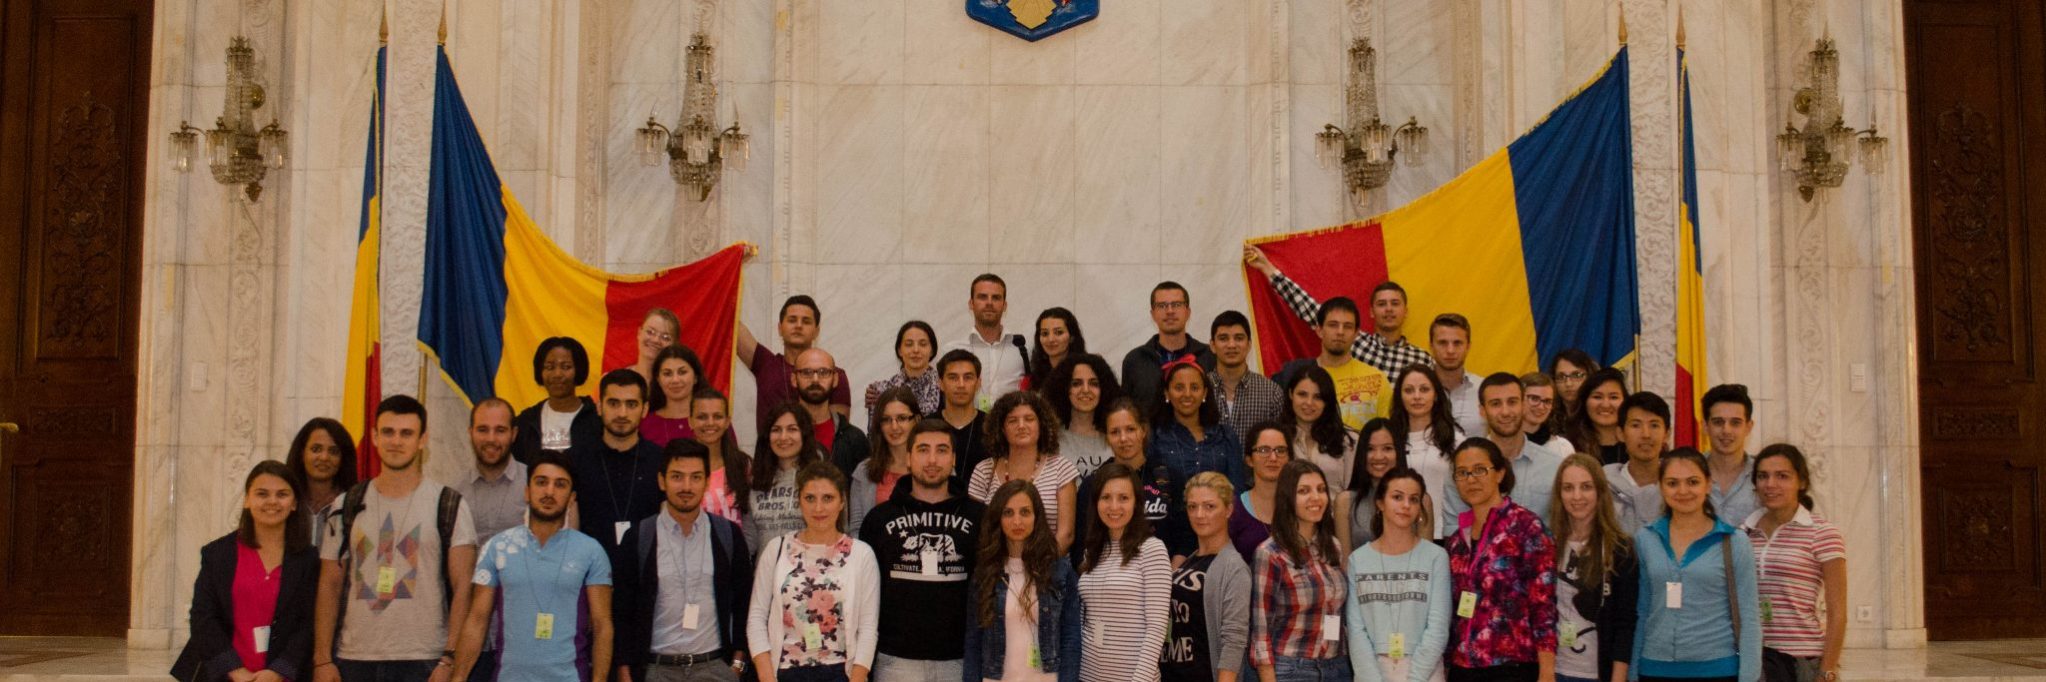 بورسیه رومانی بدون نیاز به مدرک زبان برای سال 2020-2019